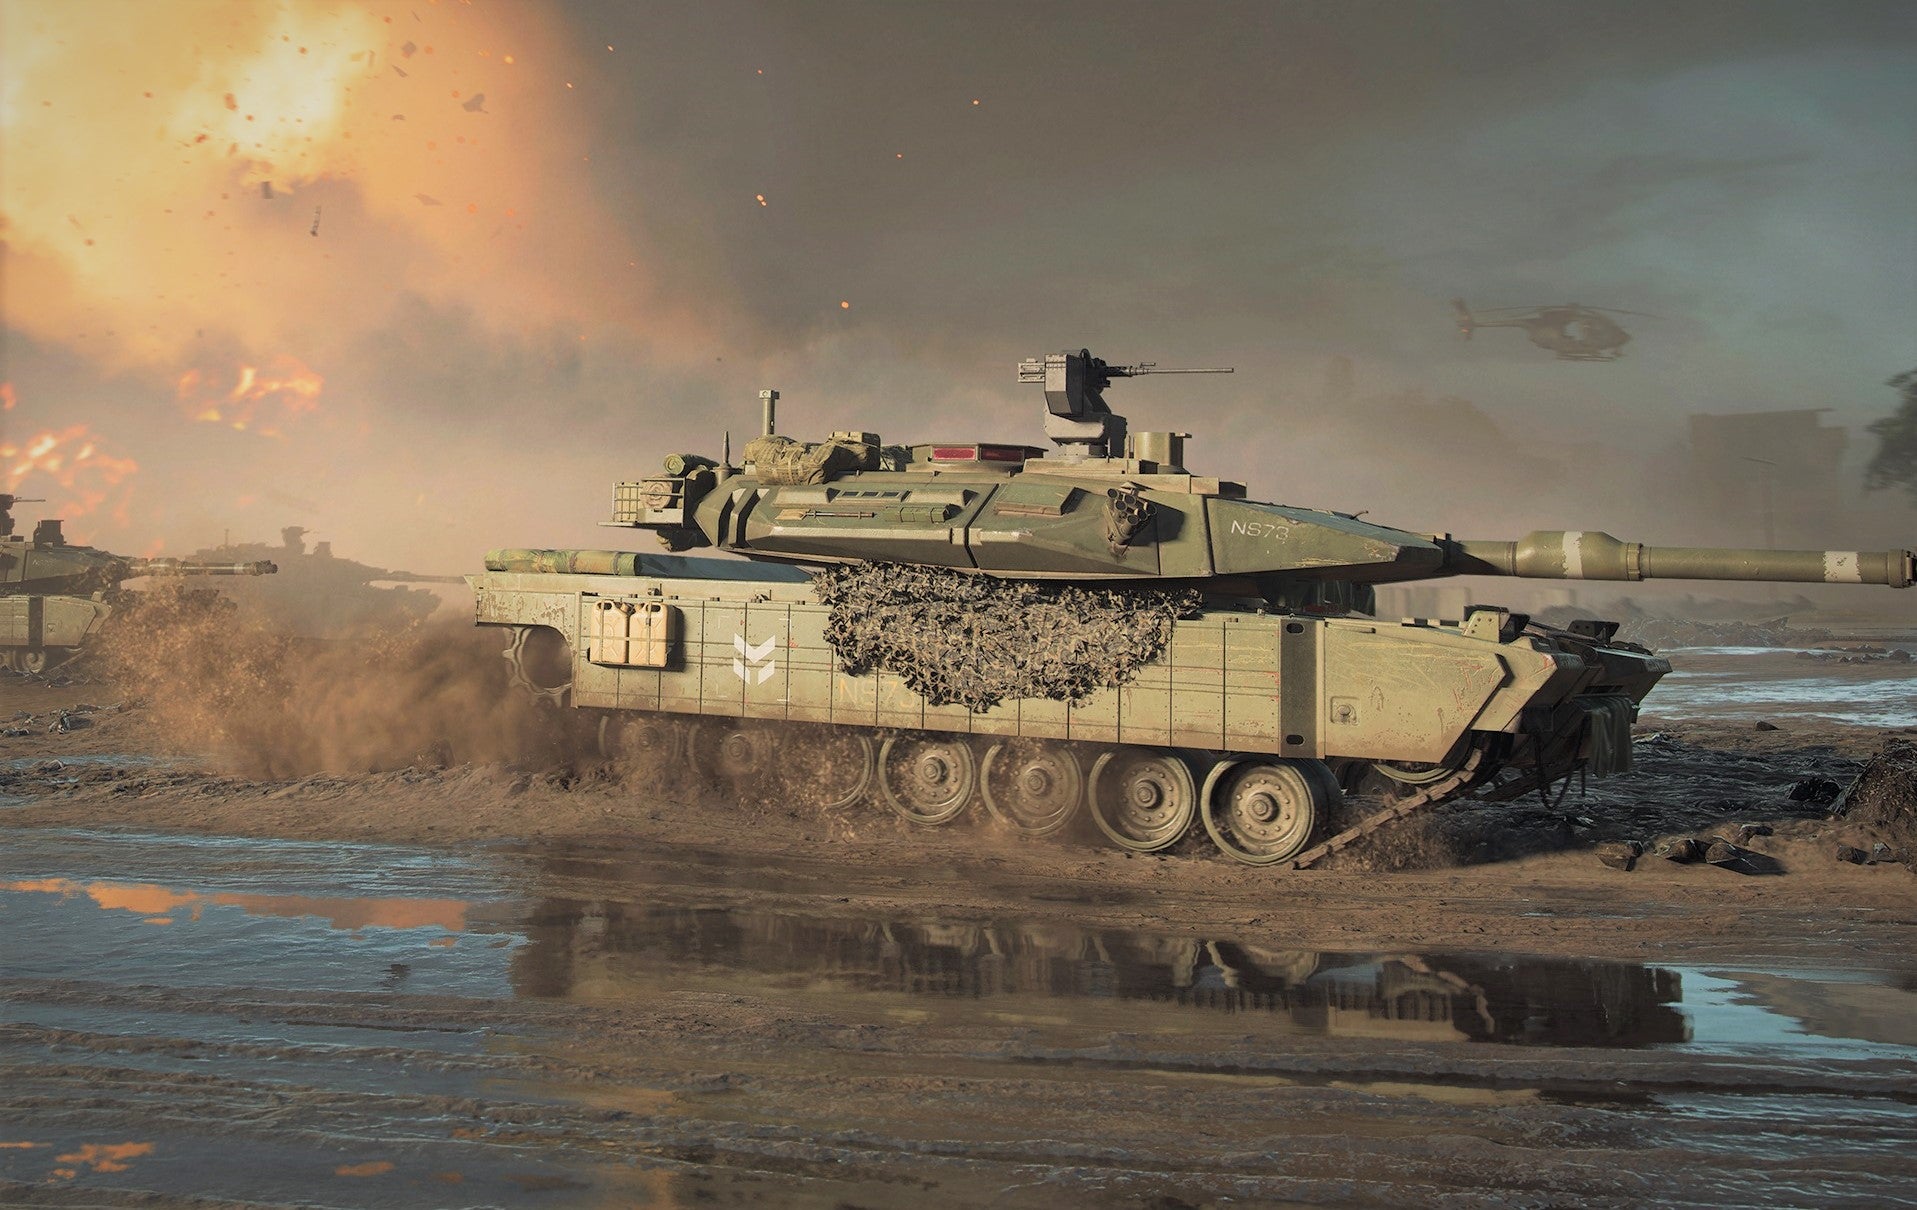 Obrazki dla Battlefield 2042 - jest pierwszy gameplay. Burza piaskowa, tornado i quad kontra śmigłowiec